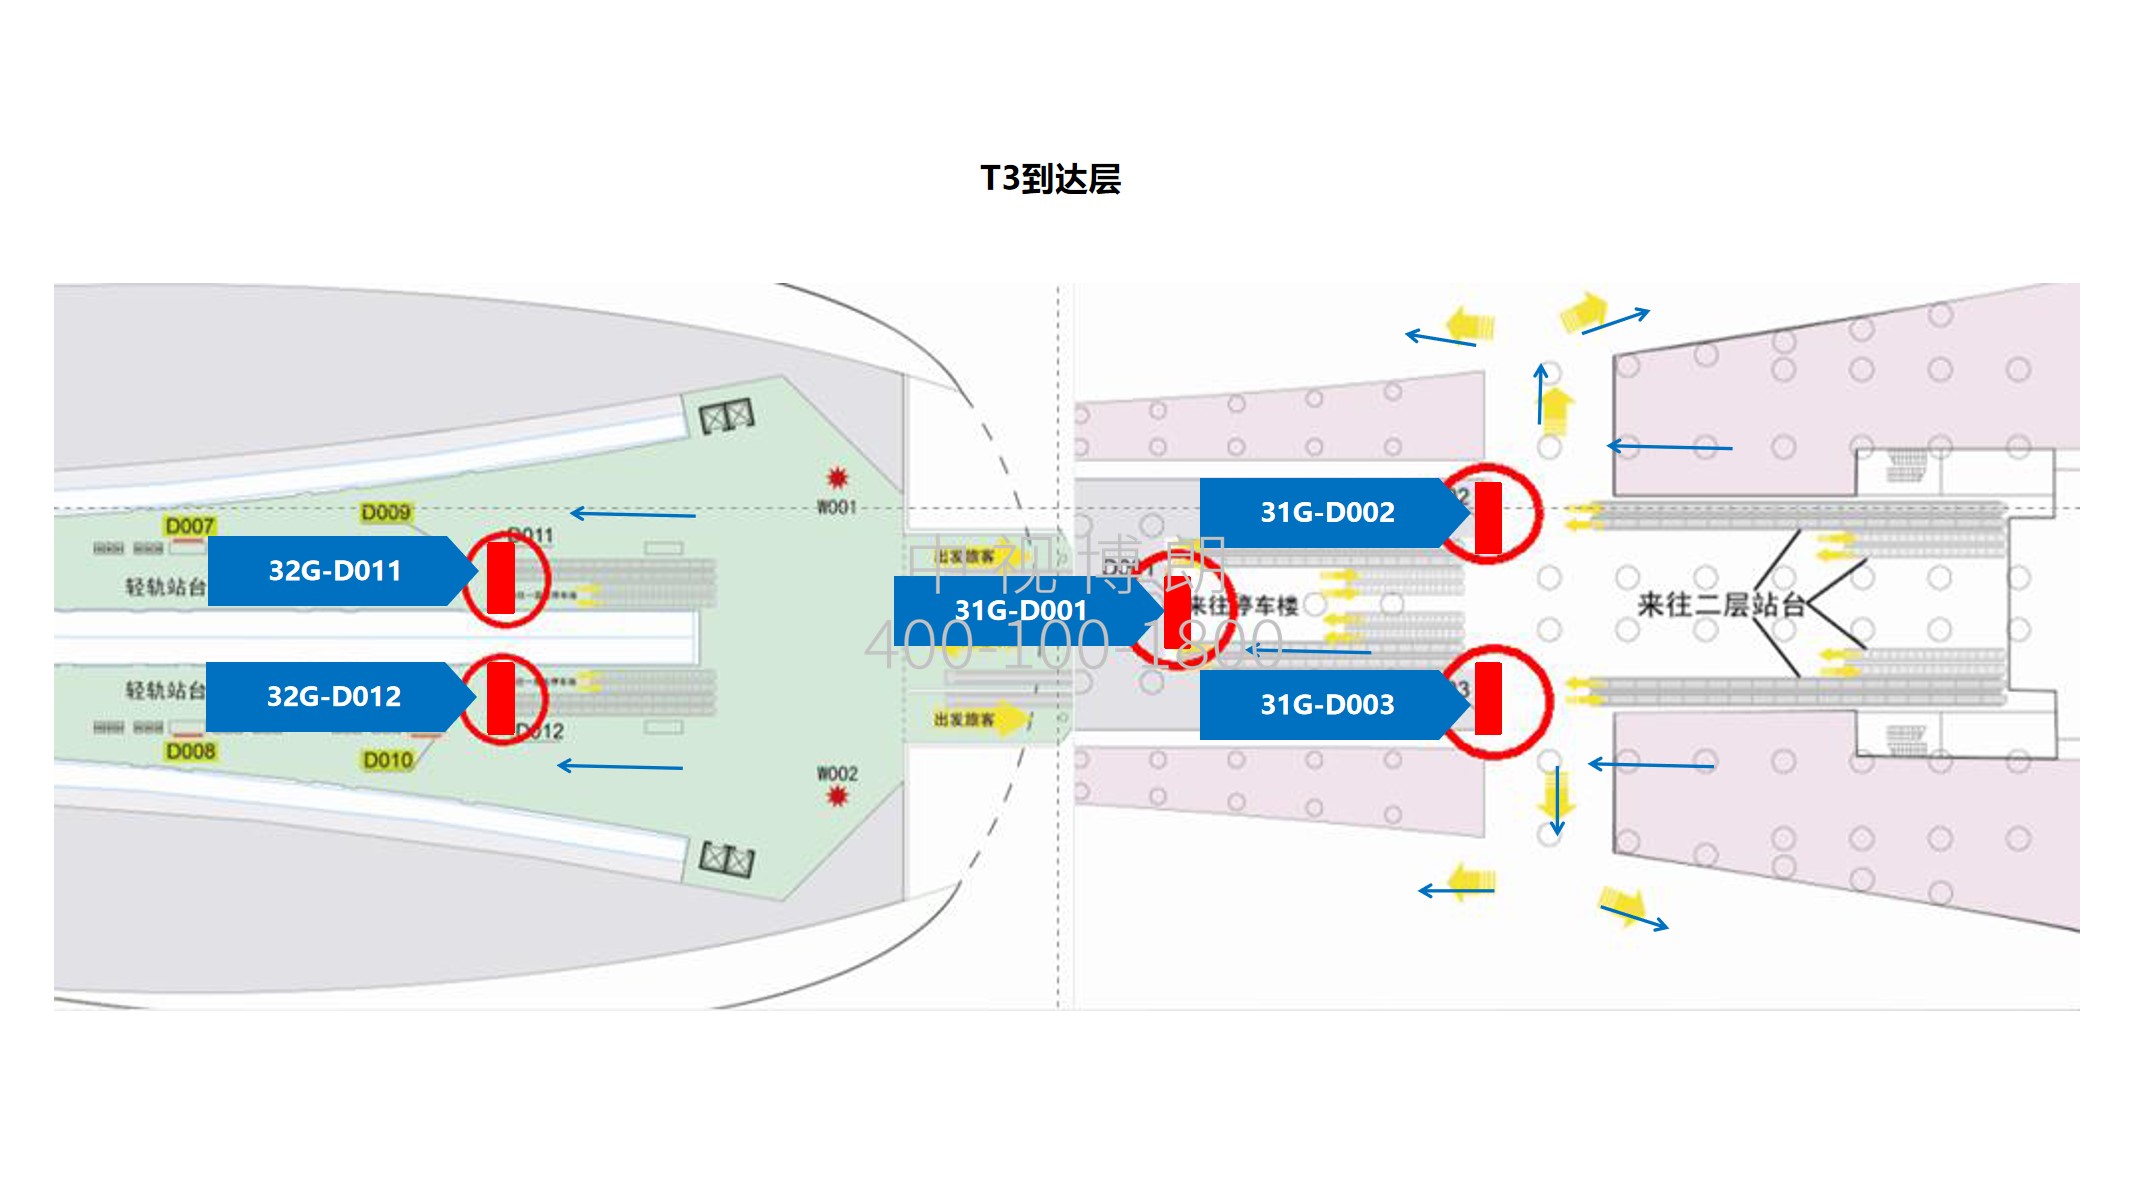 北京首都机场广告-T3 Passenger Flow Convergence Escalator Exit With 5 LED Screens位置图